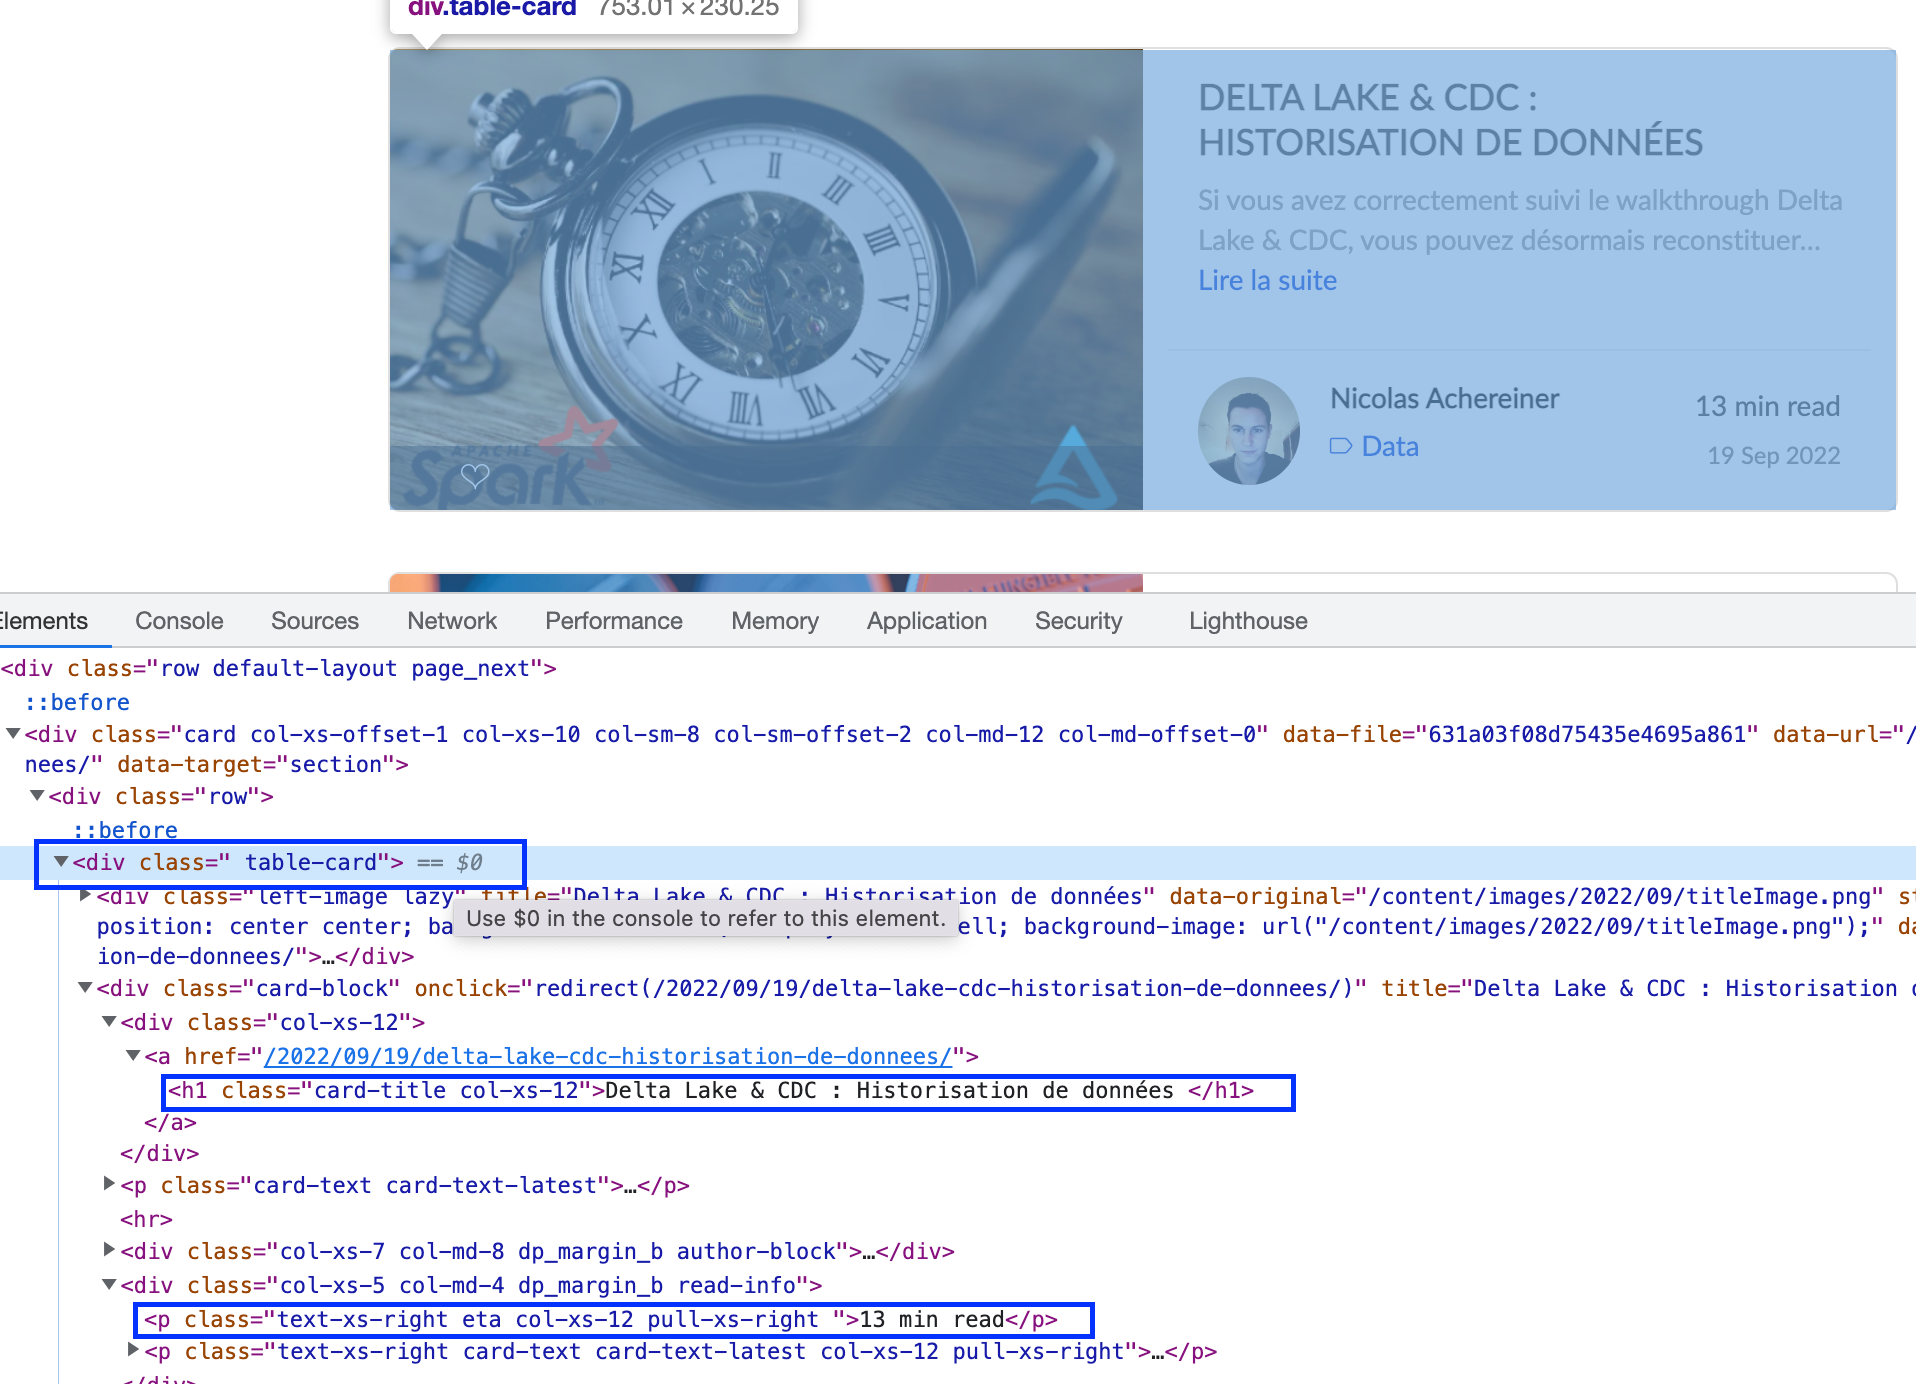 Analyse du code HTML d'un article de Blog: le titre, le temps de lecture, et la div les contenant sont mise en avant